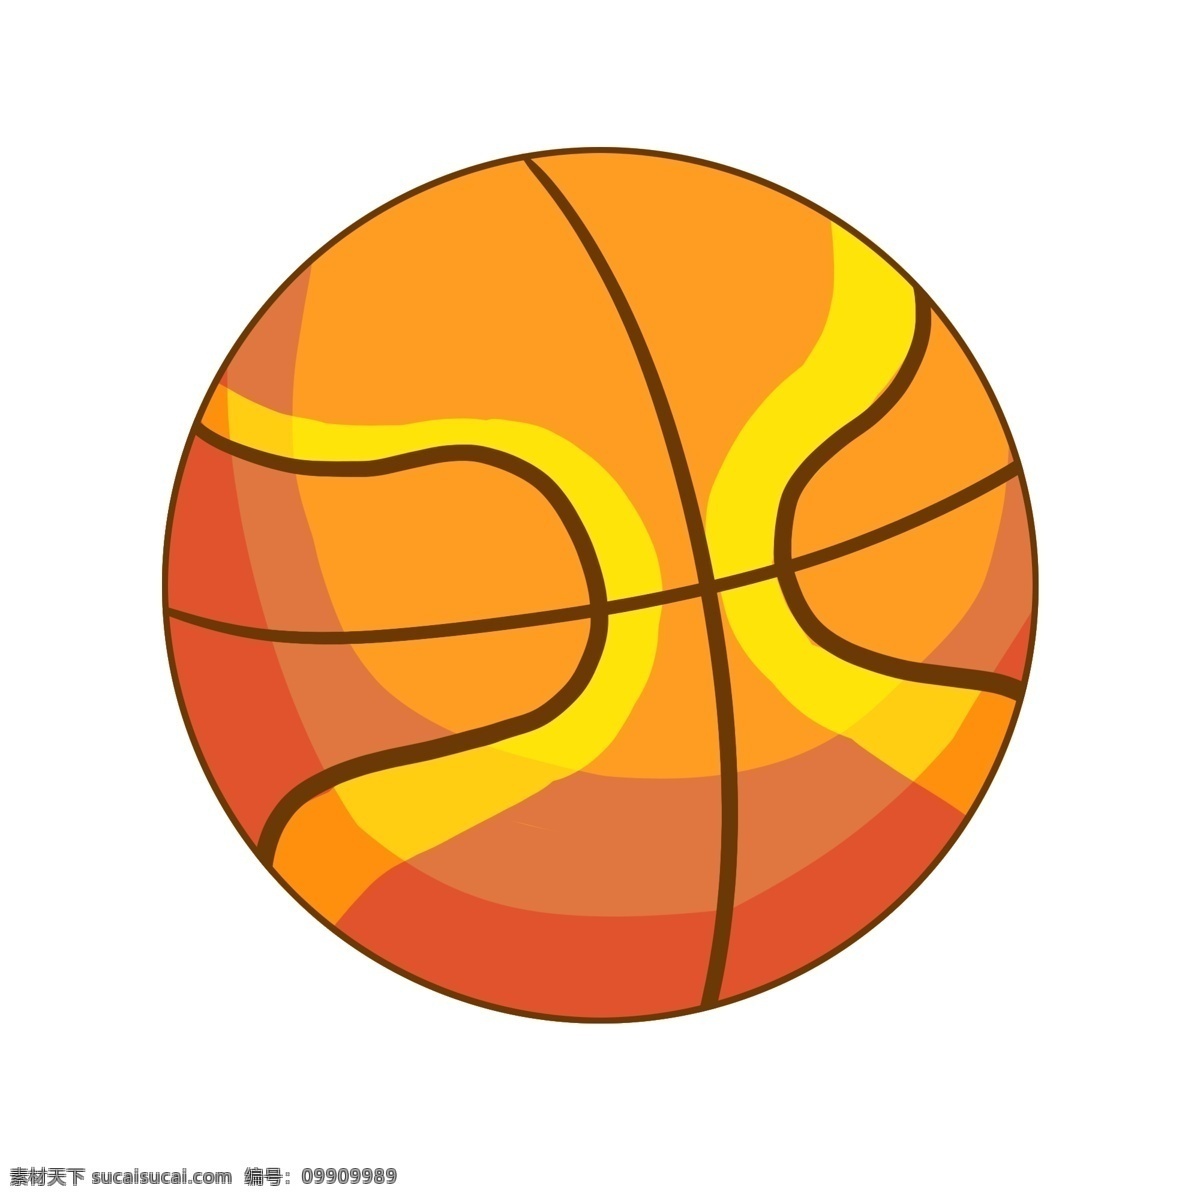 黄色 条纹 篮球 插画 黄色的条纹 卡通插画 篮球插画 皮球插画 篮球运动 篮球健身 黑色的条纹